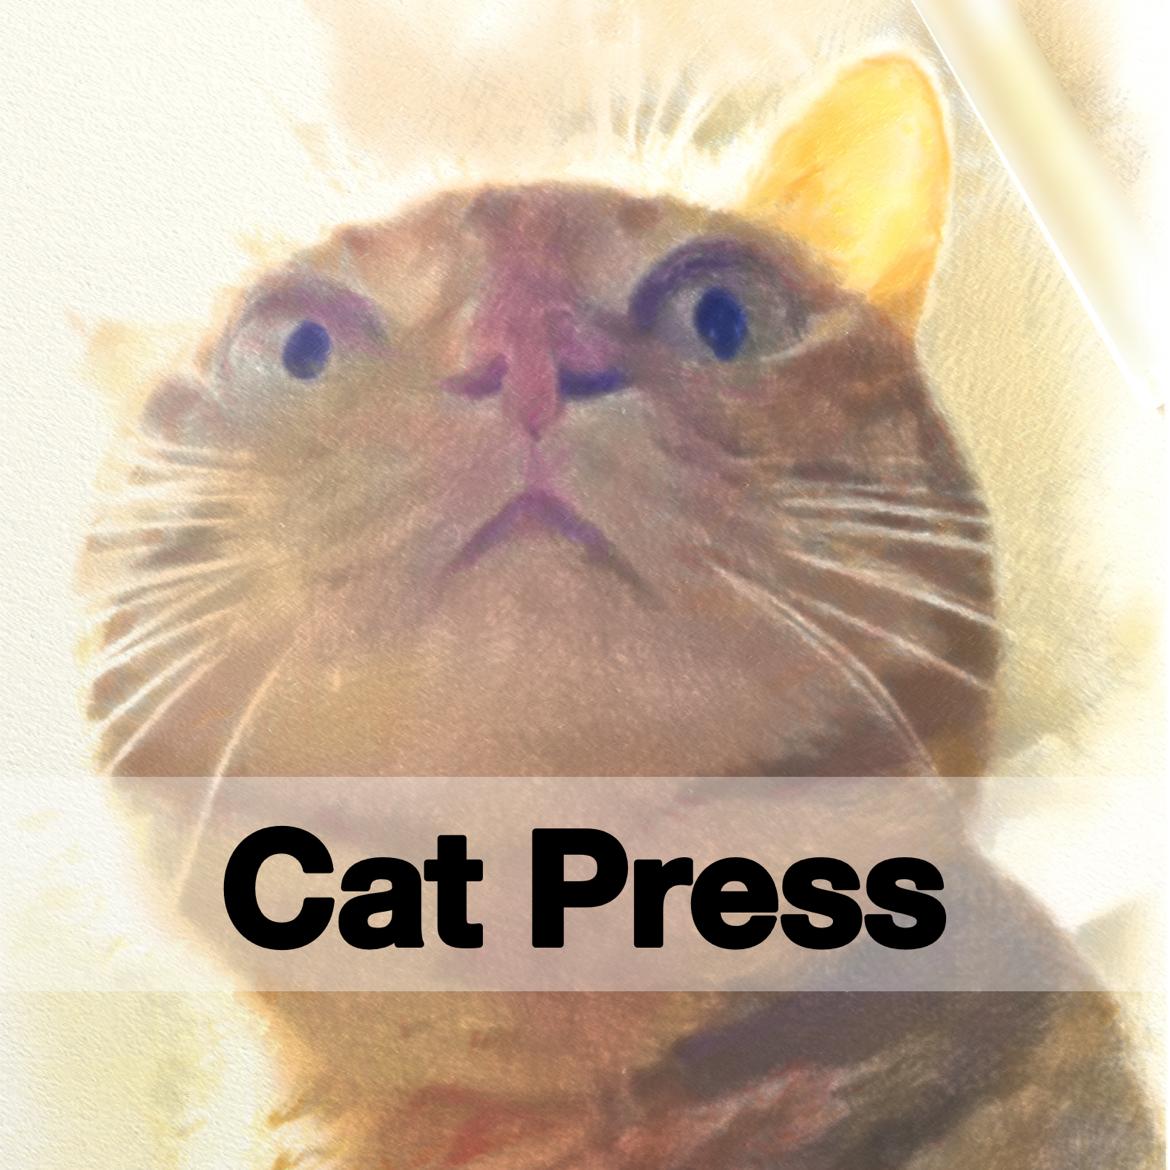 Cat Press